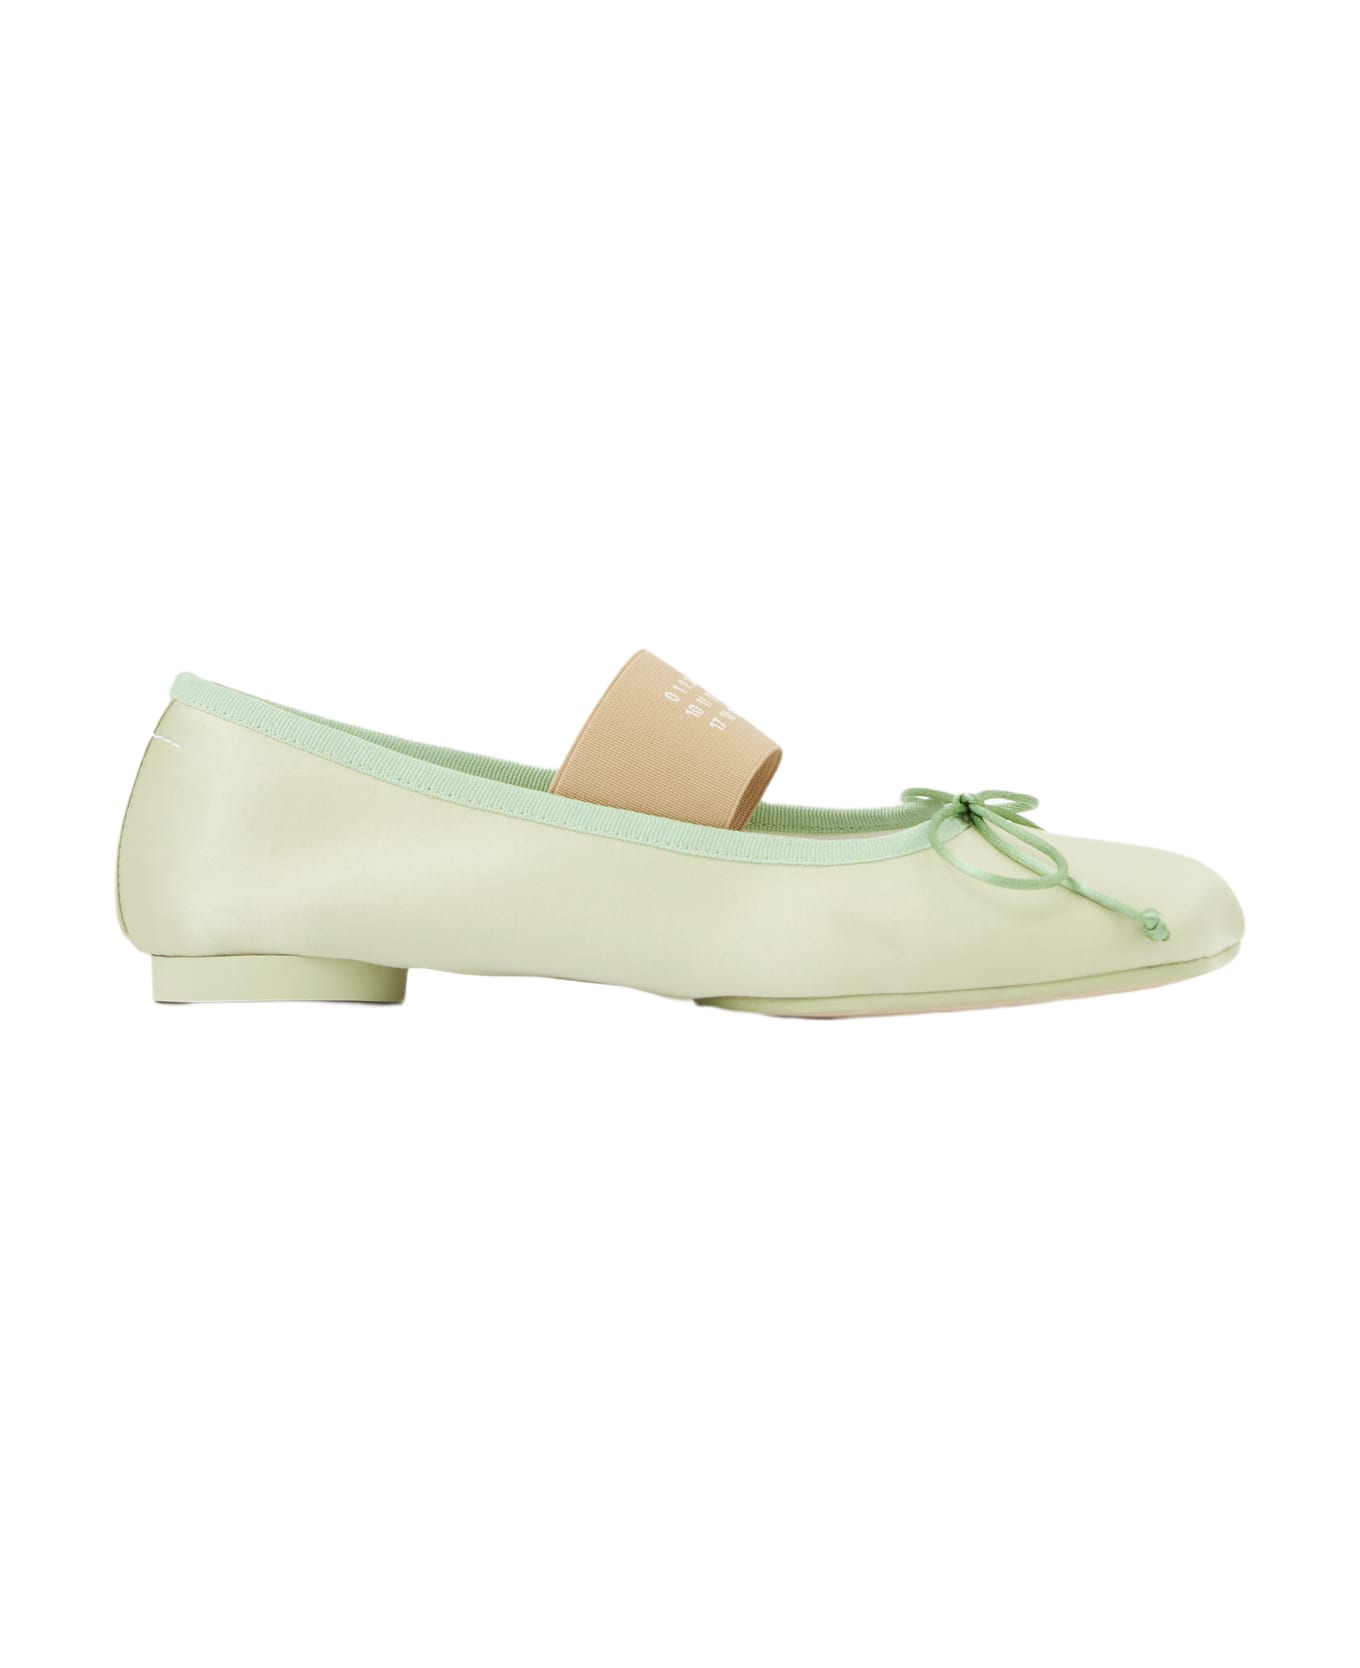 MM6 Maison Margiela Ballet Shoe Ballet Flats - green